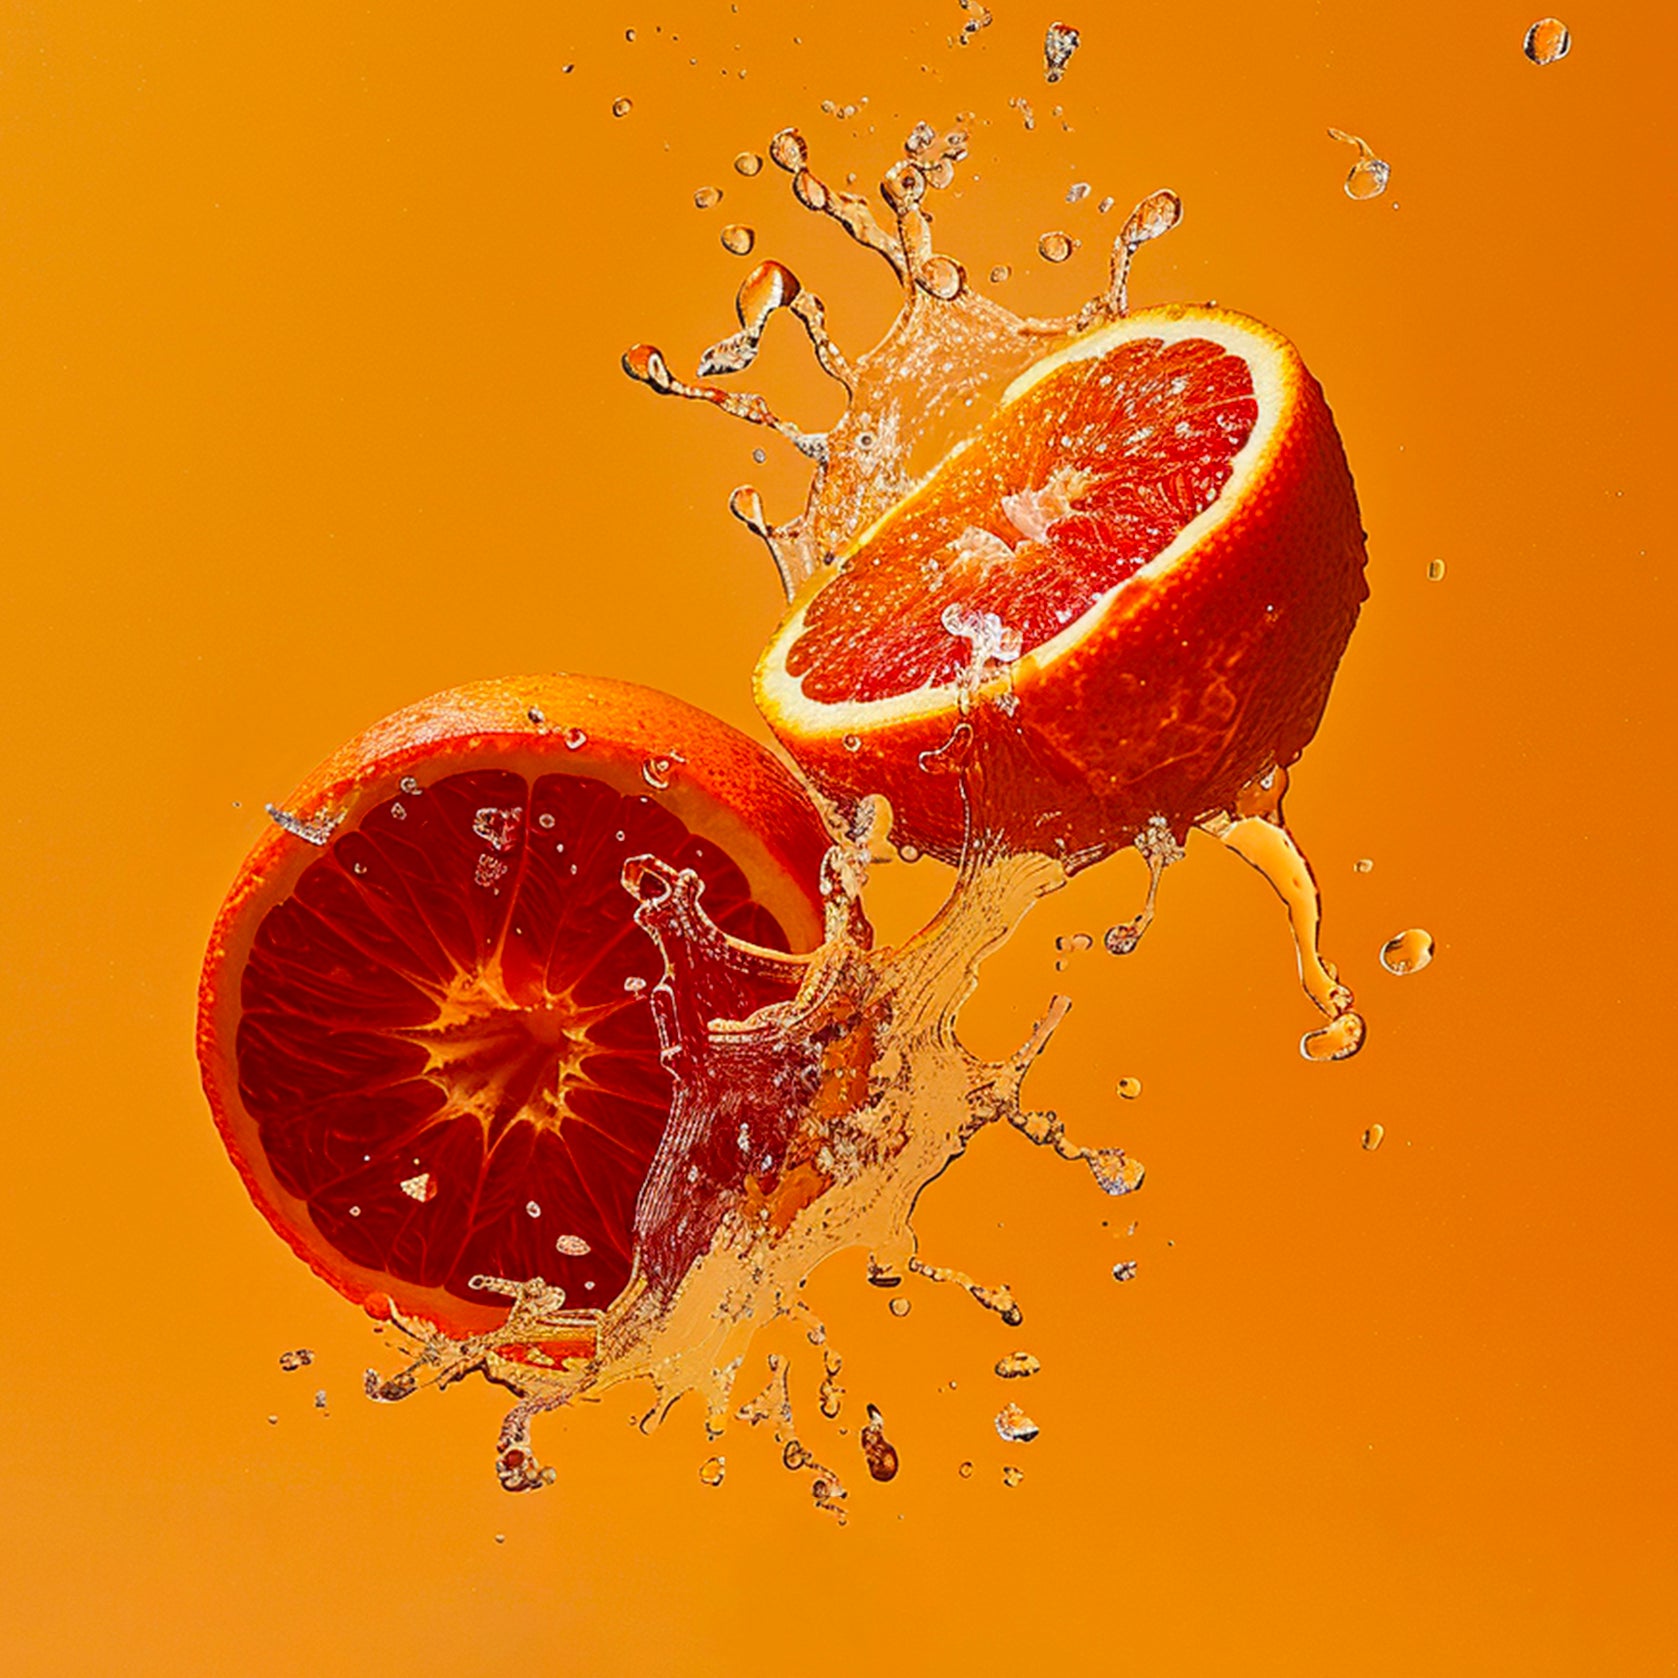 Accord de mandarine rouge. Photographie d’une mandarine rouge coupée en deux, toutes deux pulpeuses et juteuses avec des éclaboussures de jus autour d'elles, donnant un effet de fraîcheur. 